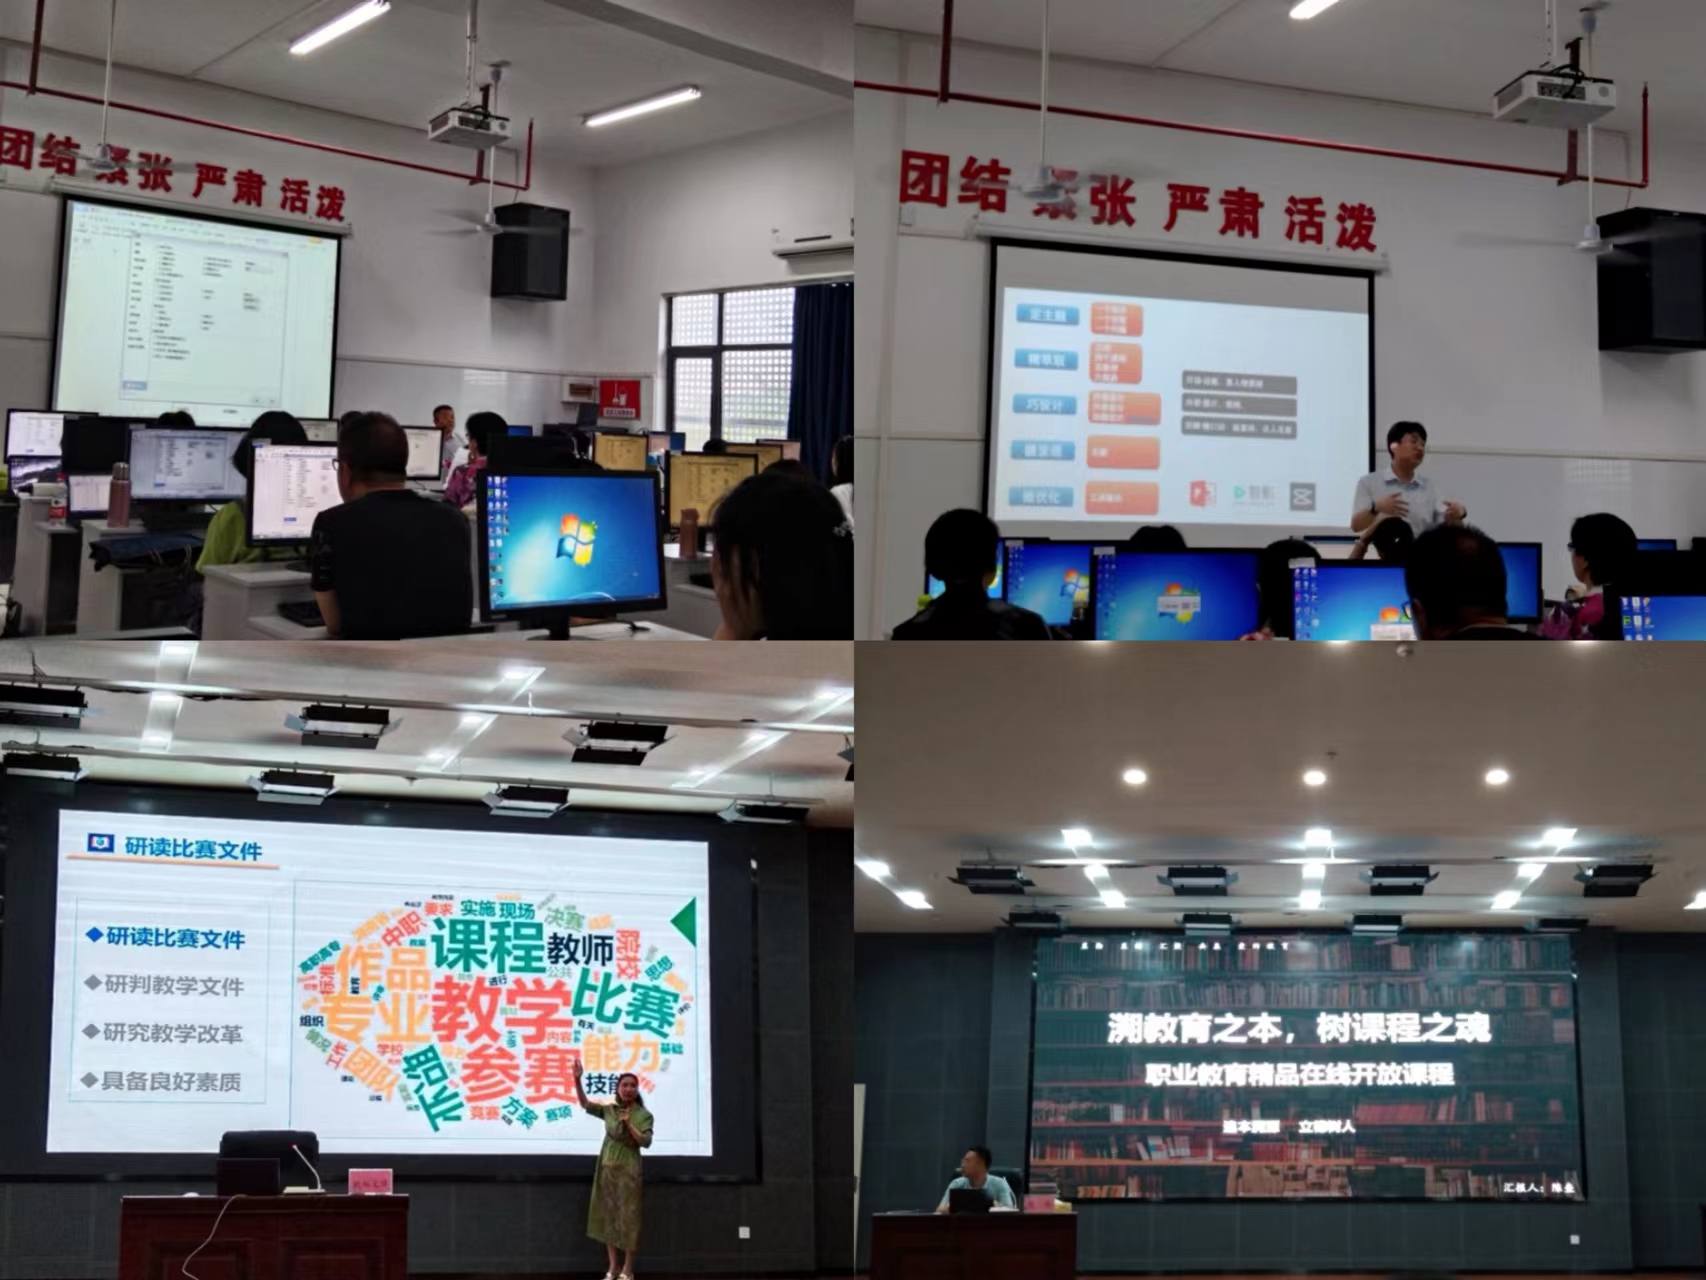 湖南汽车工程职业学院基础课教学部开展2022年教师暑期集中培训